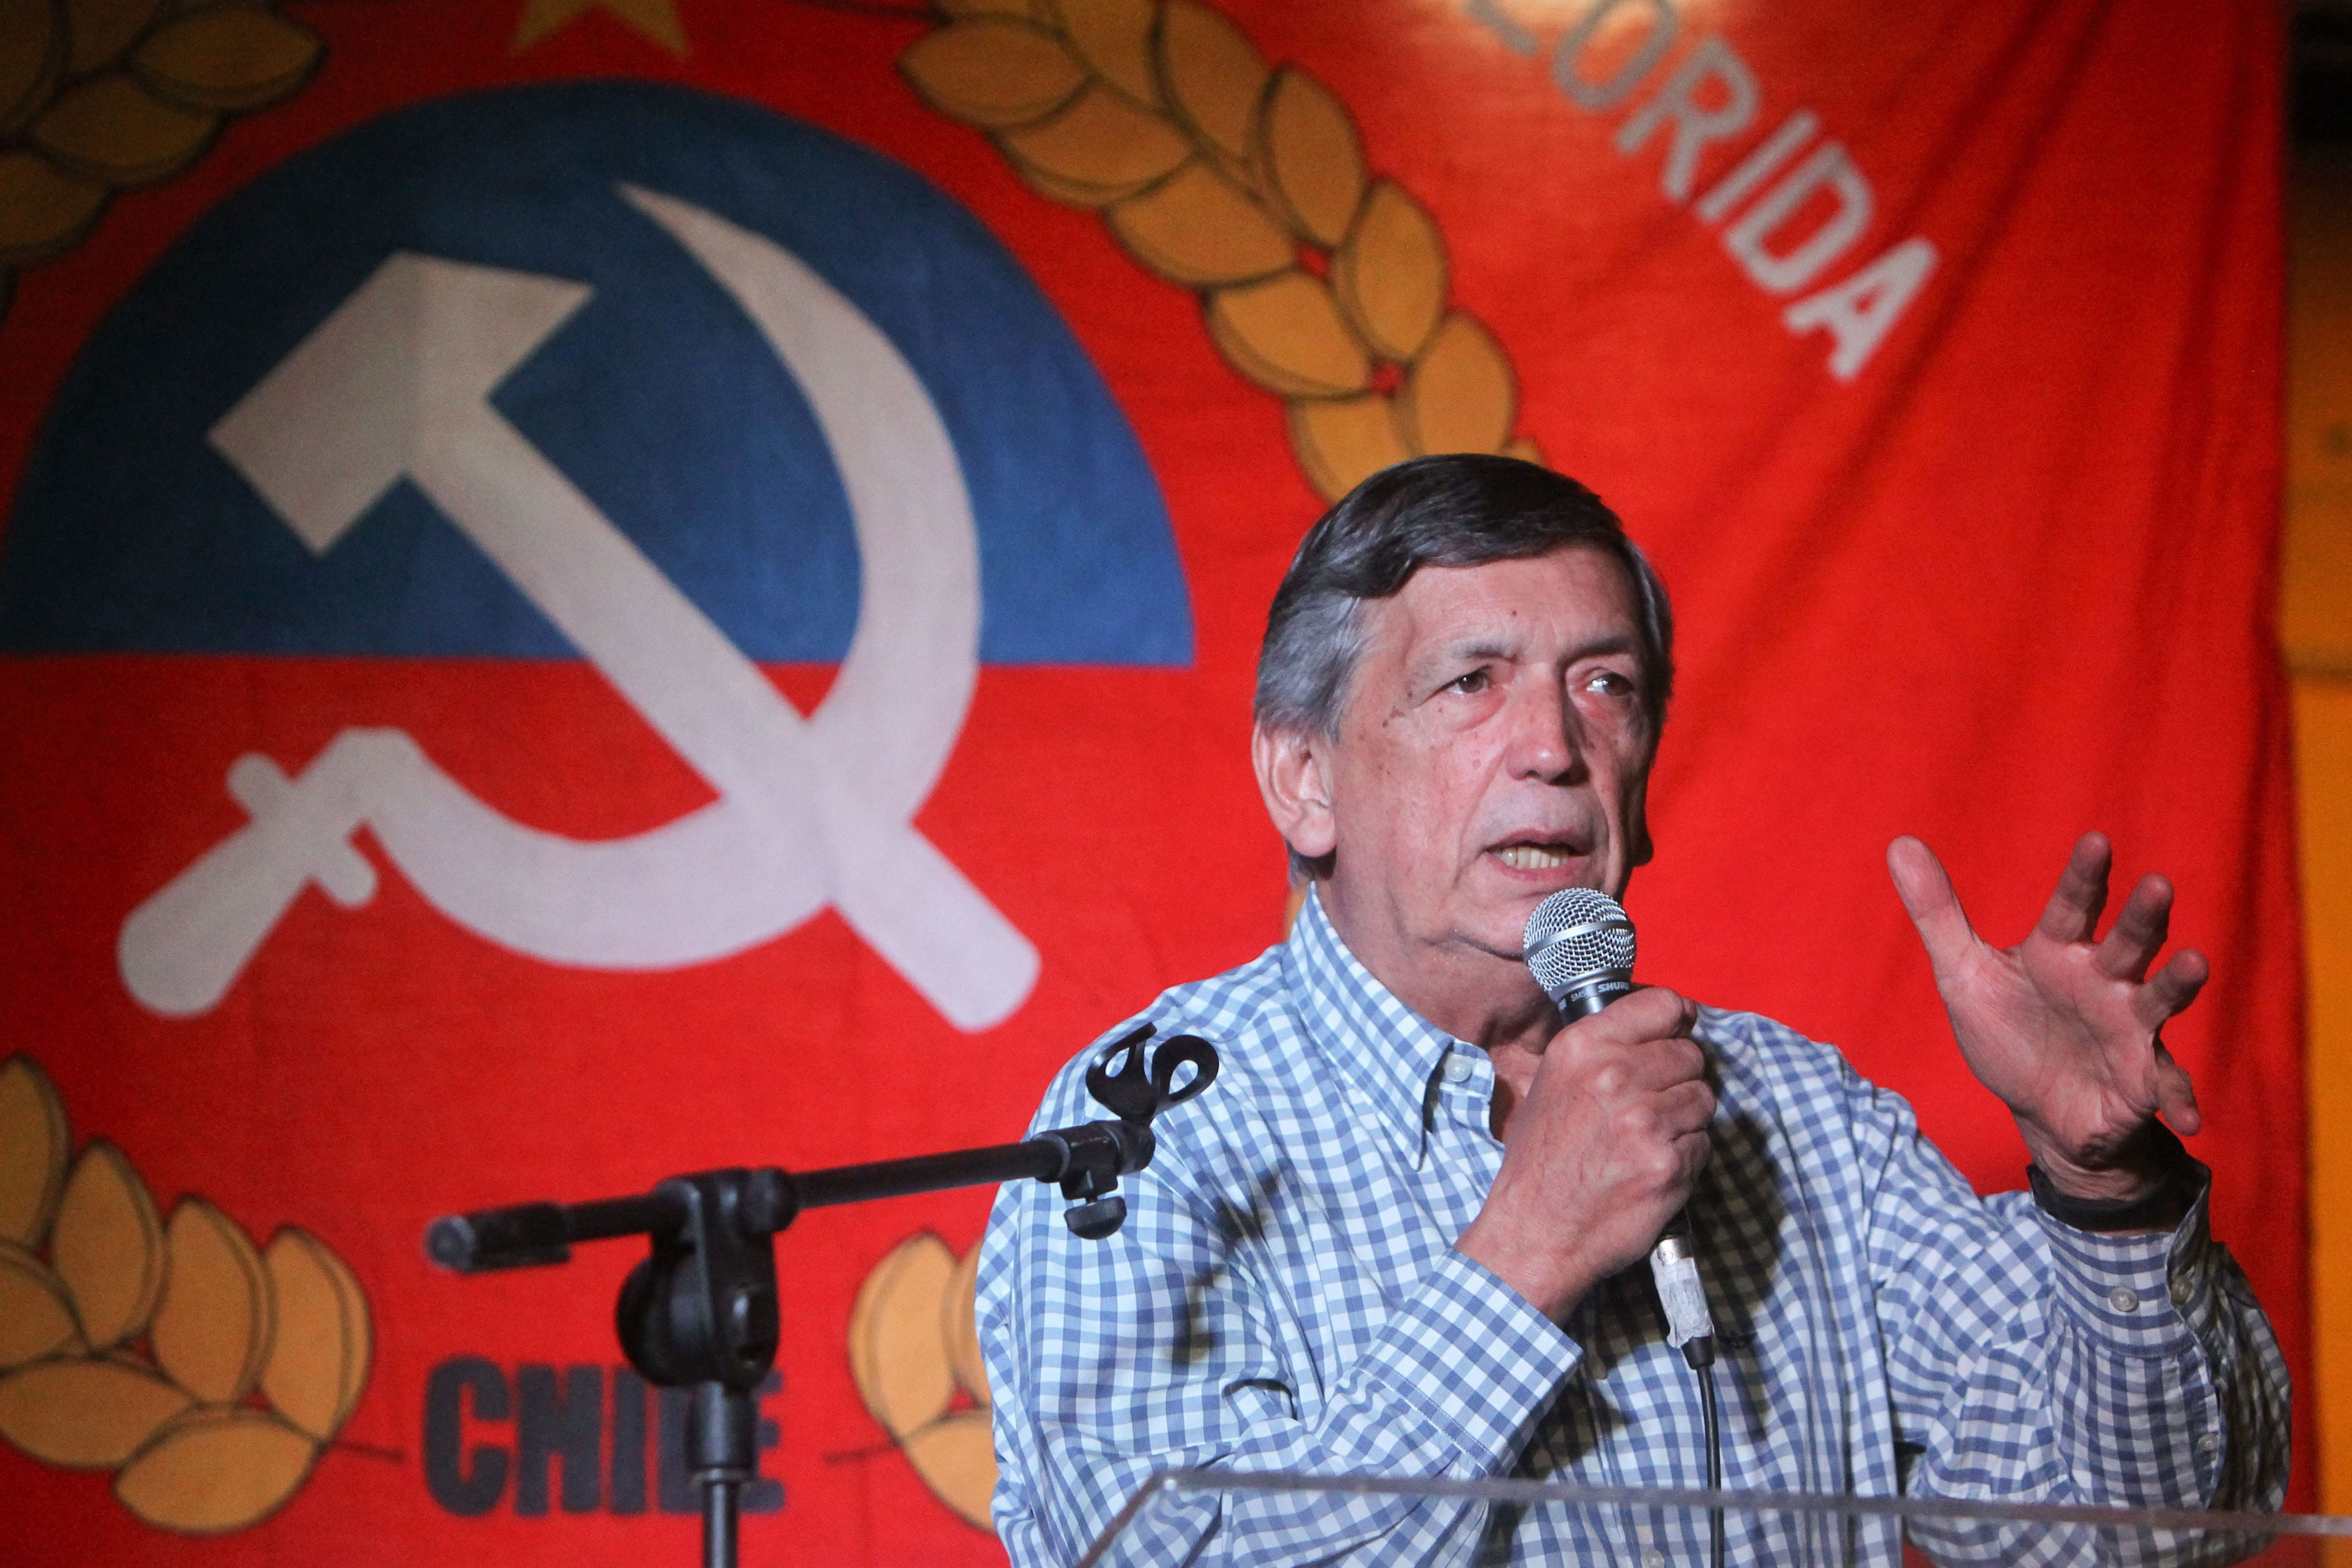 partido comunista de chile firma acuerdo de colaboración y formación con su par cubano “sin injerencia en asuntos internos”